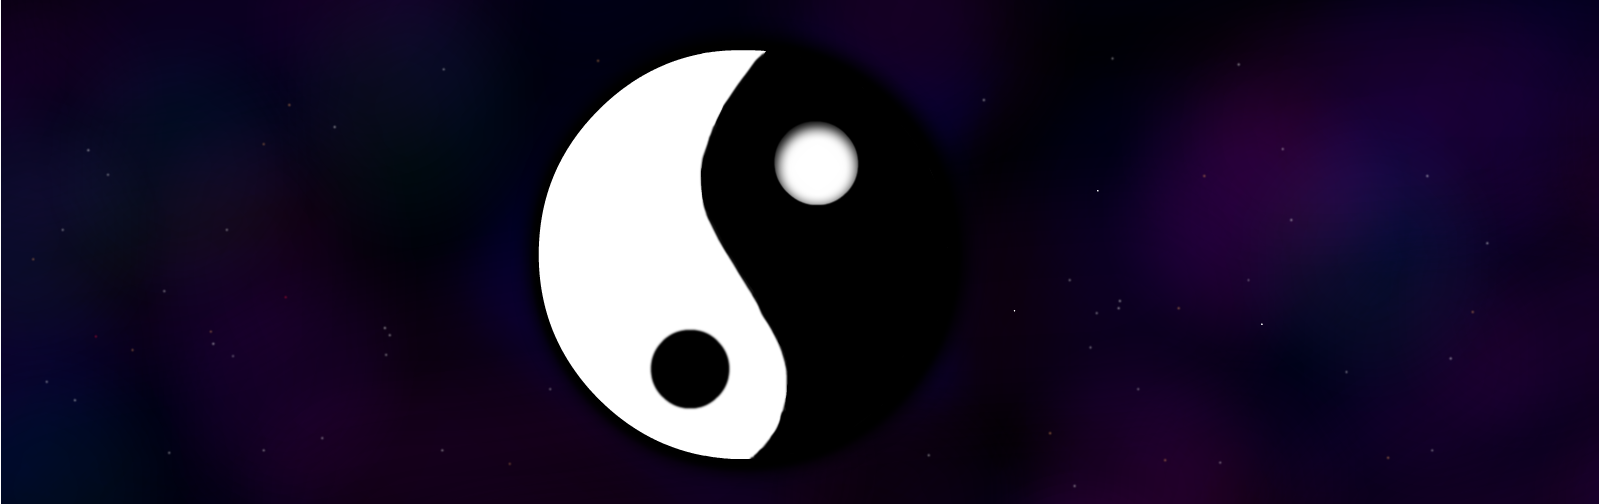 Yin yang ☯